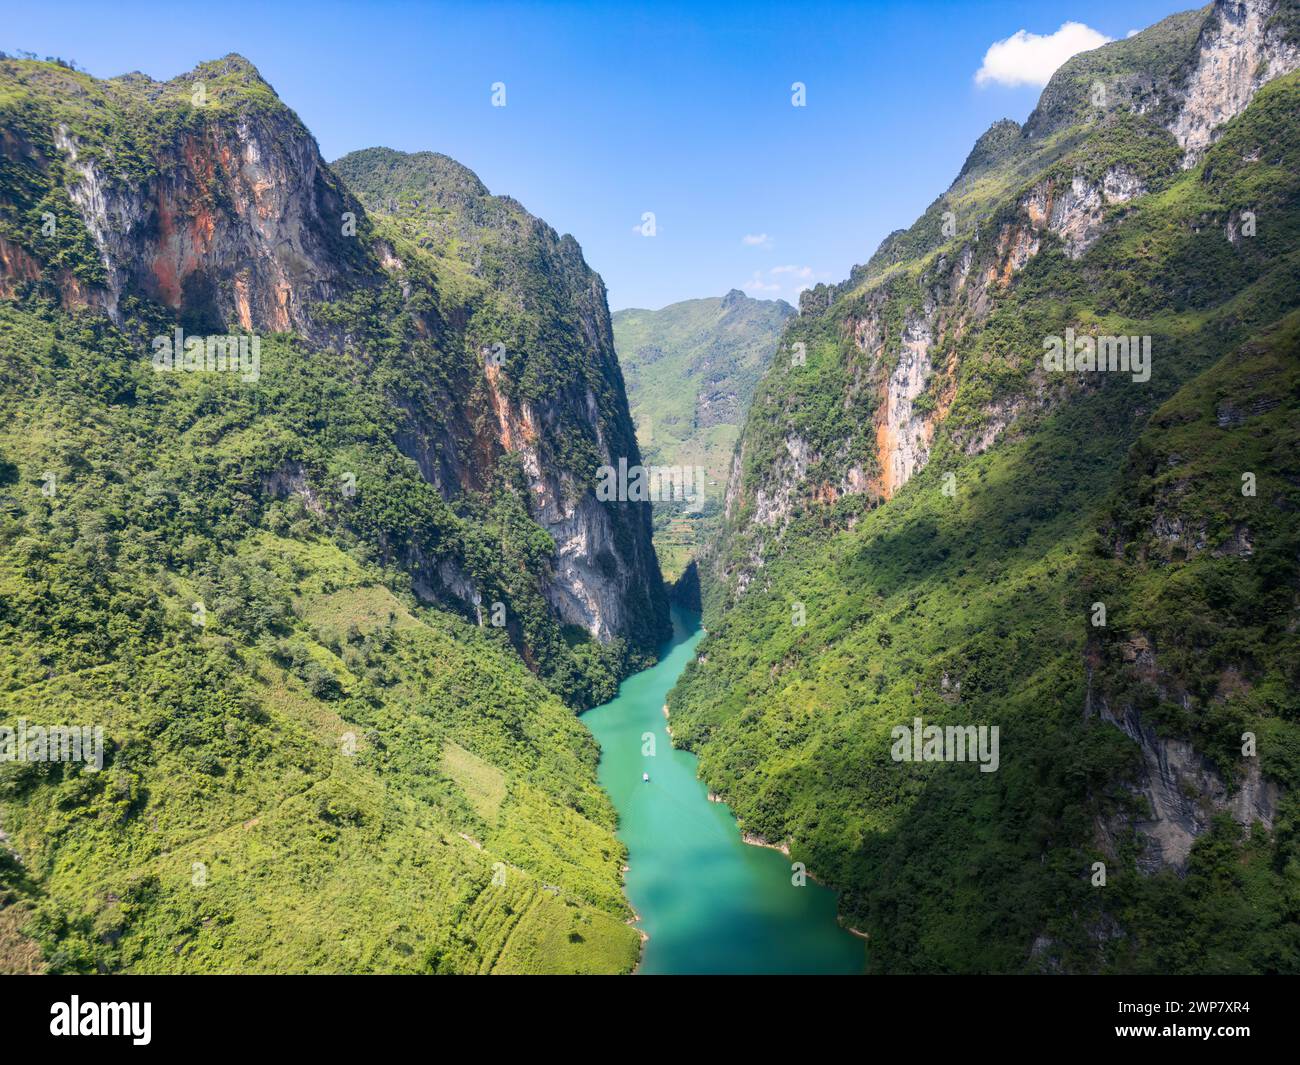 Vista aerea del fiume NHO Que sull'anello ha Giang, Vietnam. Foto Stock